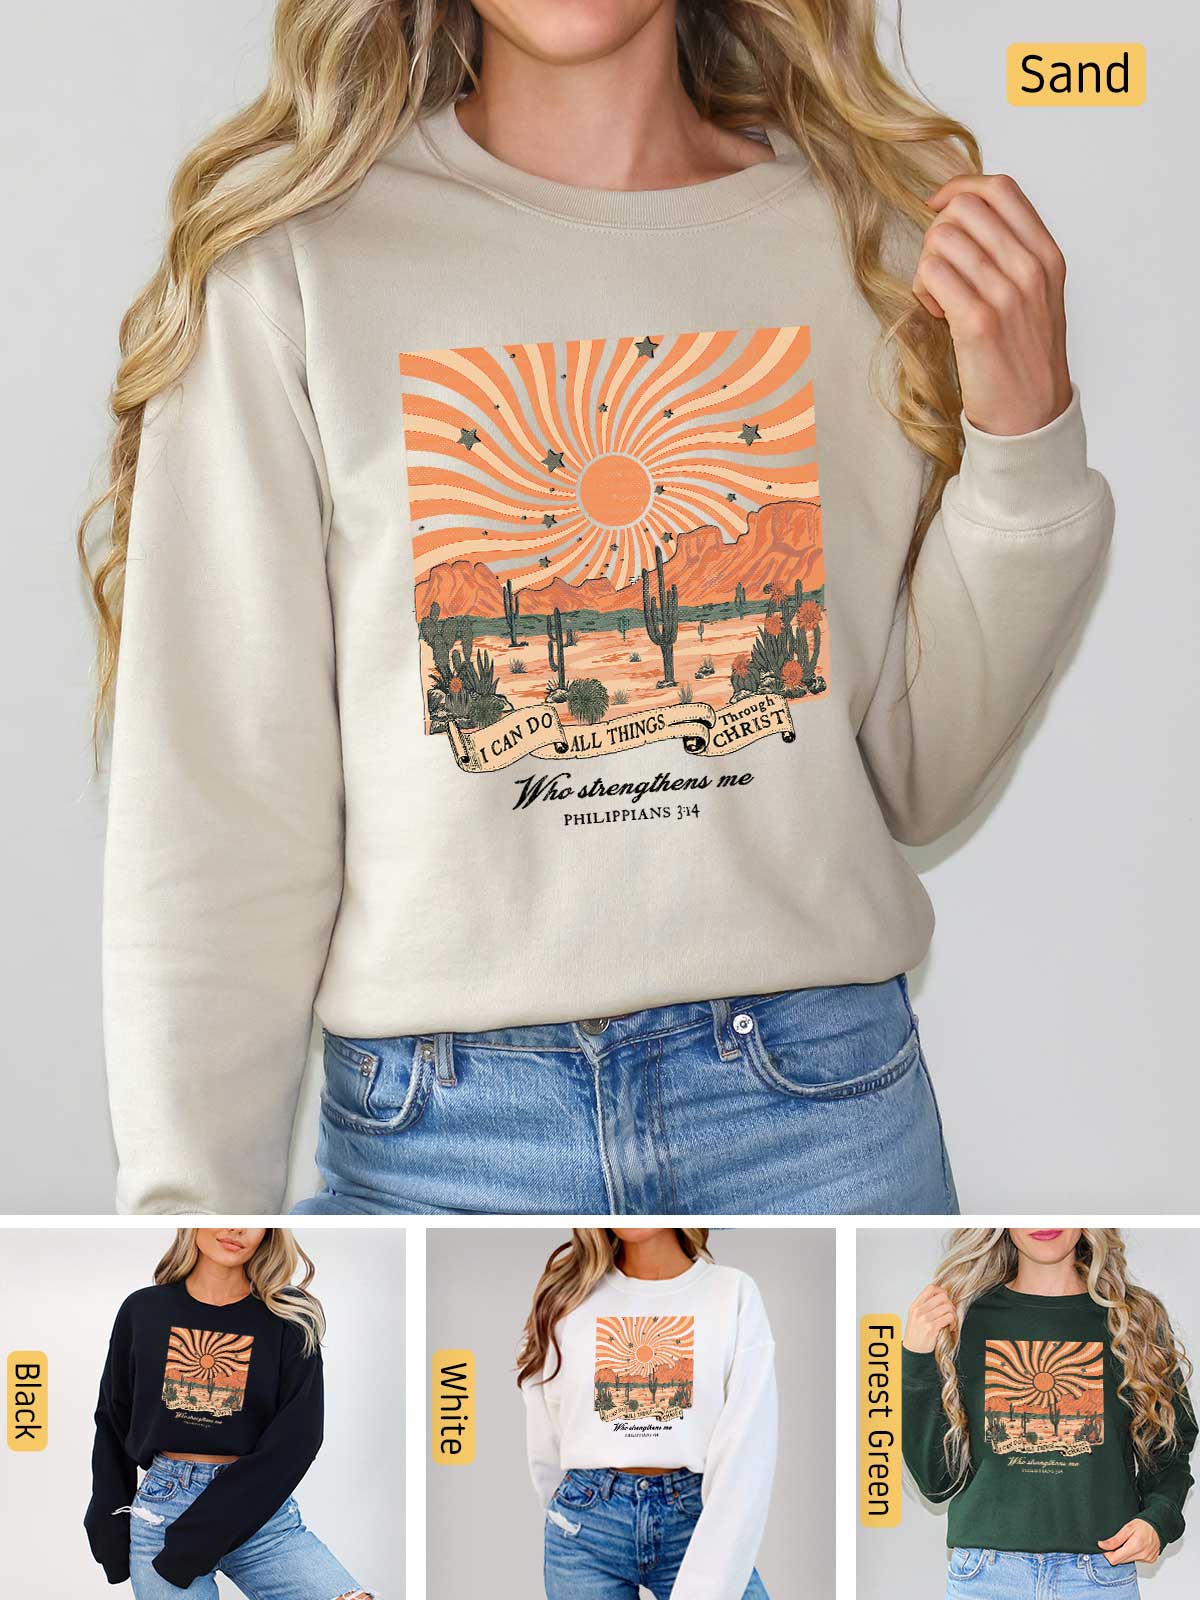 a woman wearing a sweatshirt with a desert scene on it